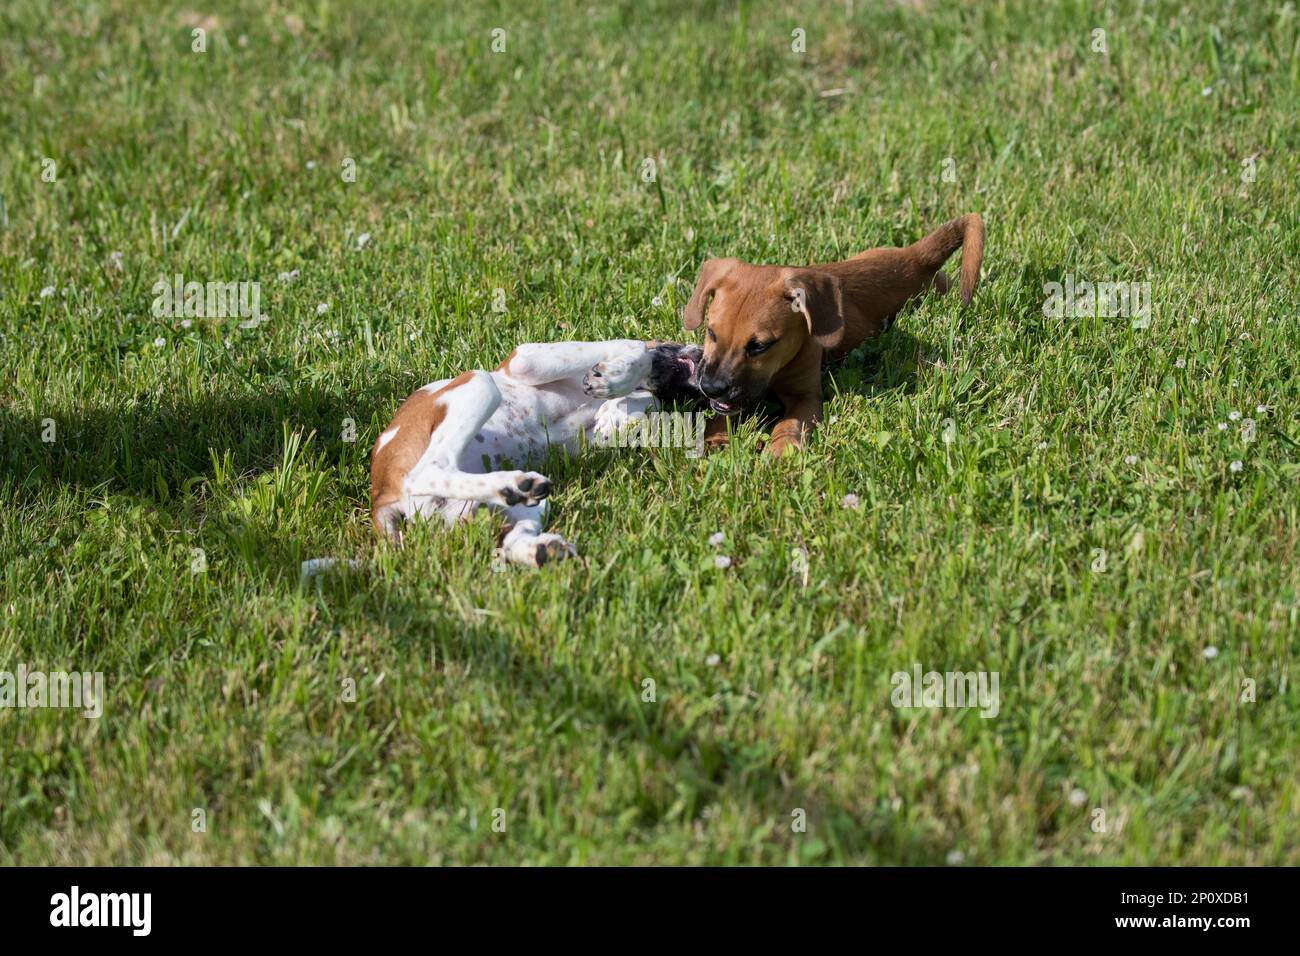 Coppia di cani adottivo che giocano in erba Foto Stock